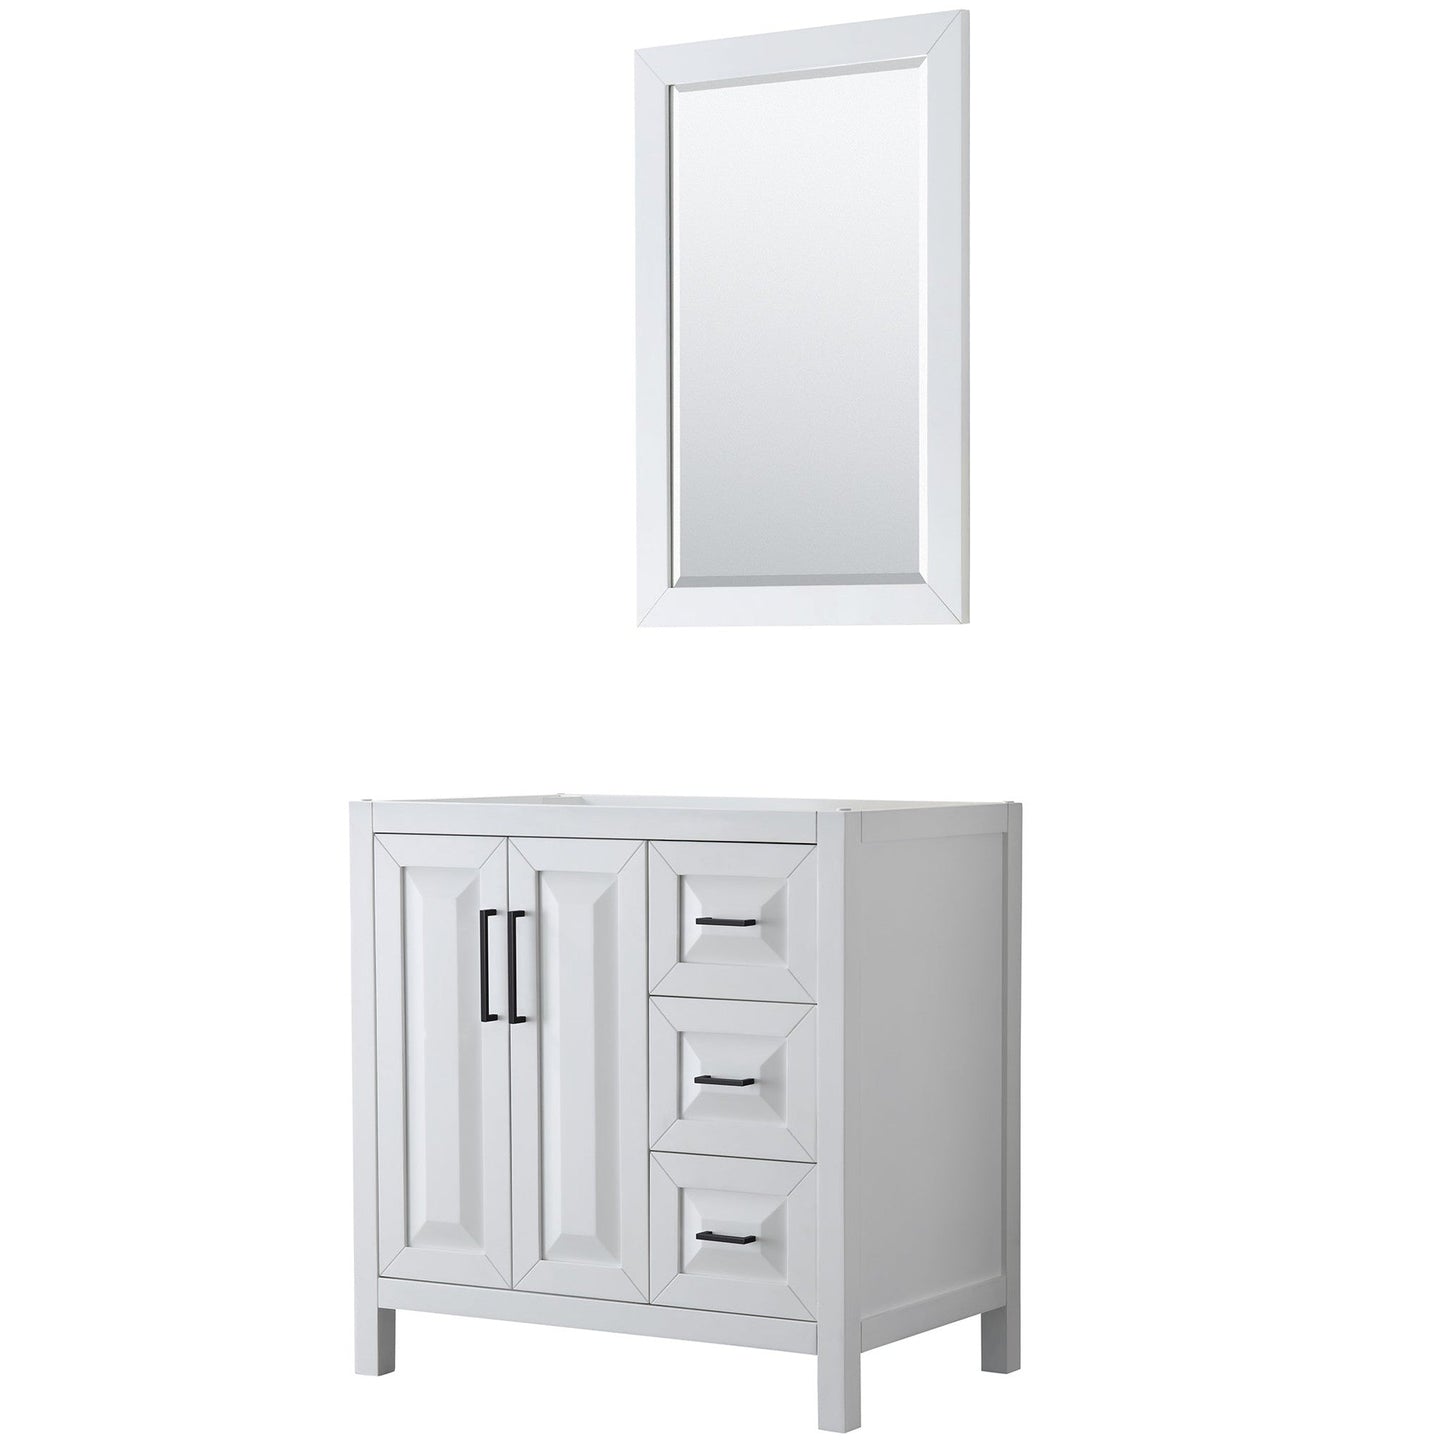 Daria 36" Single Bathroom Vanity in White, No Countertop, No Sink, Matte Black Trim, 24" Mirror